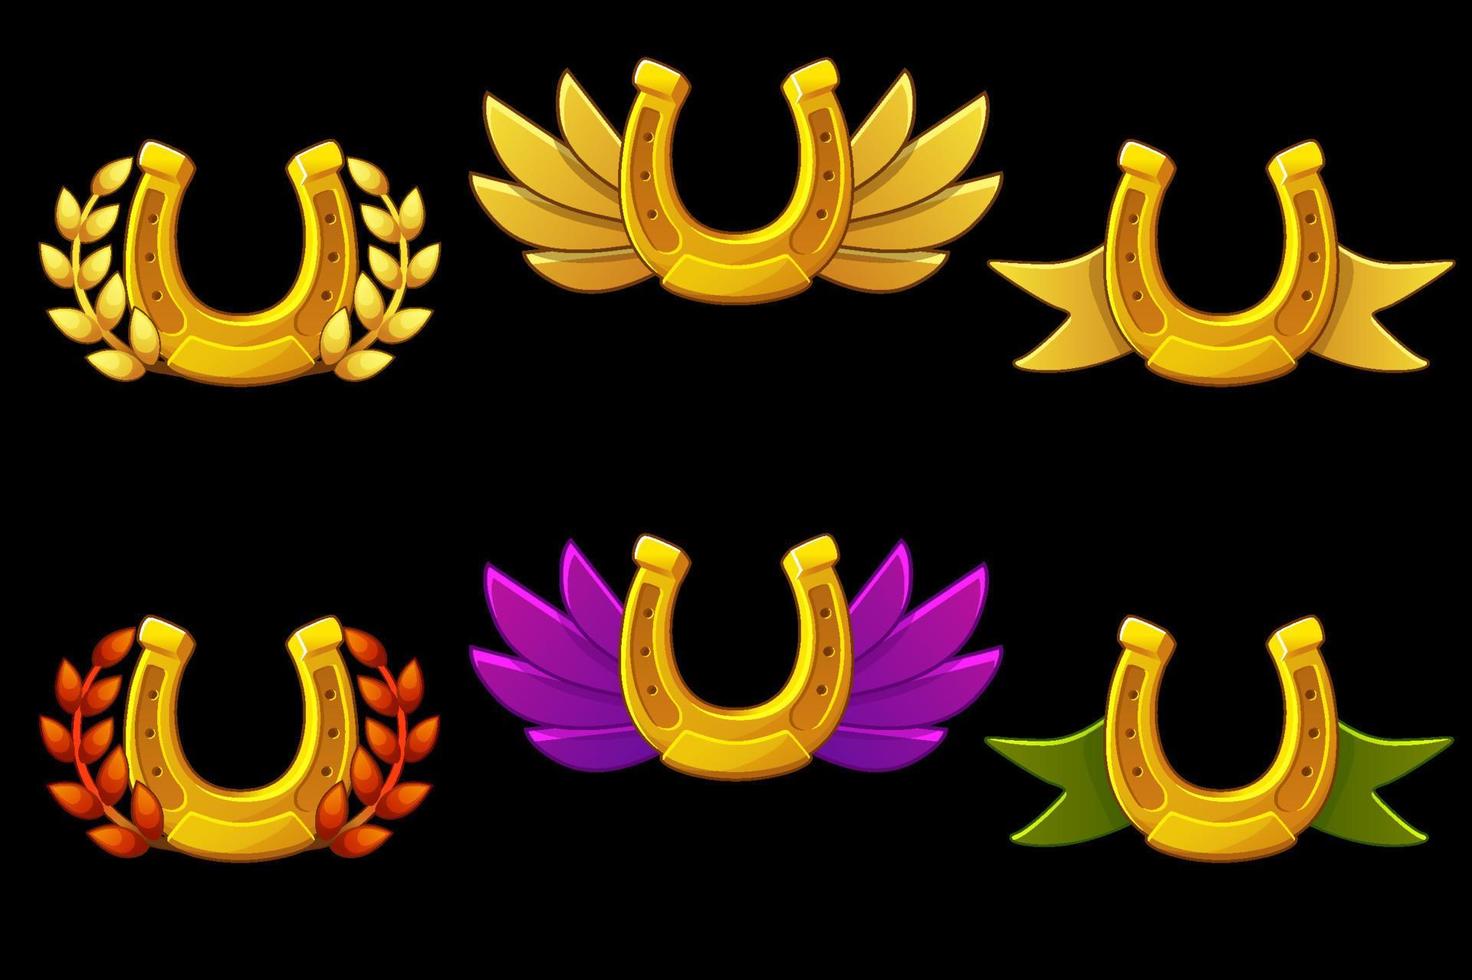 set di distintivi a ferro di cavallo d'oro vettoriali con le ali. illustrazione della raccolta dell'icona di simboli a ferro di cavallo.